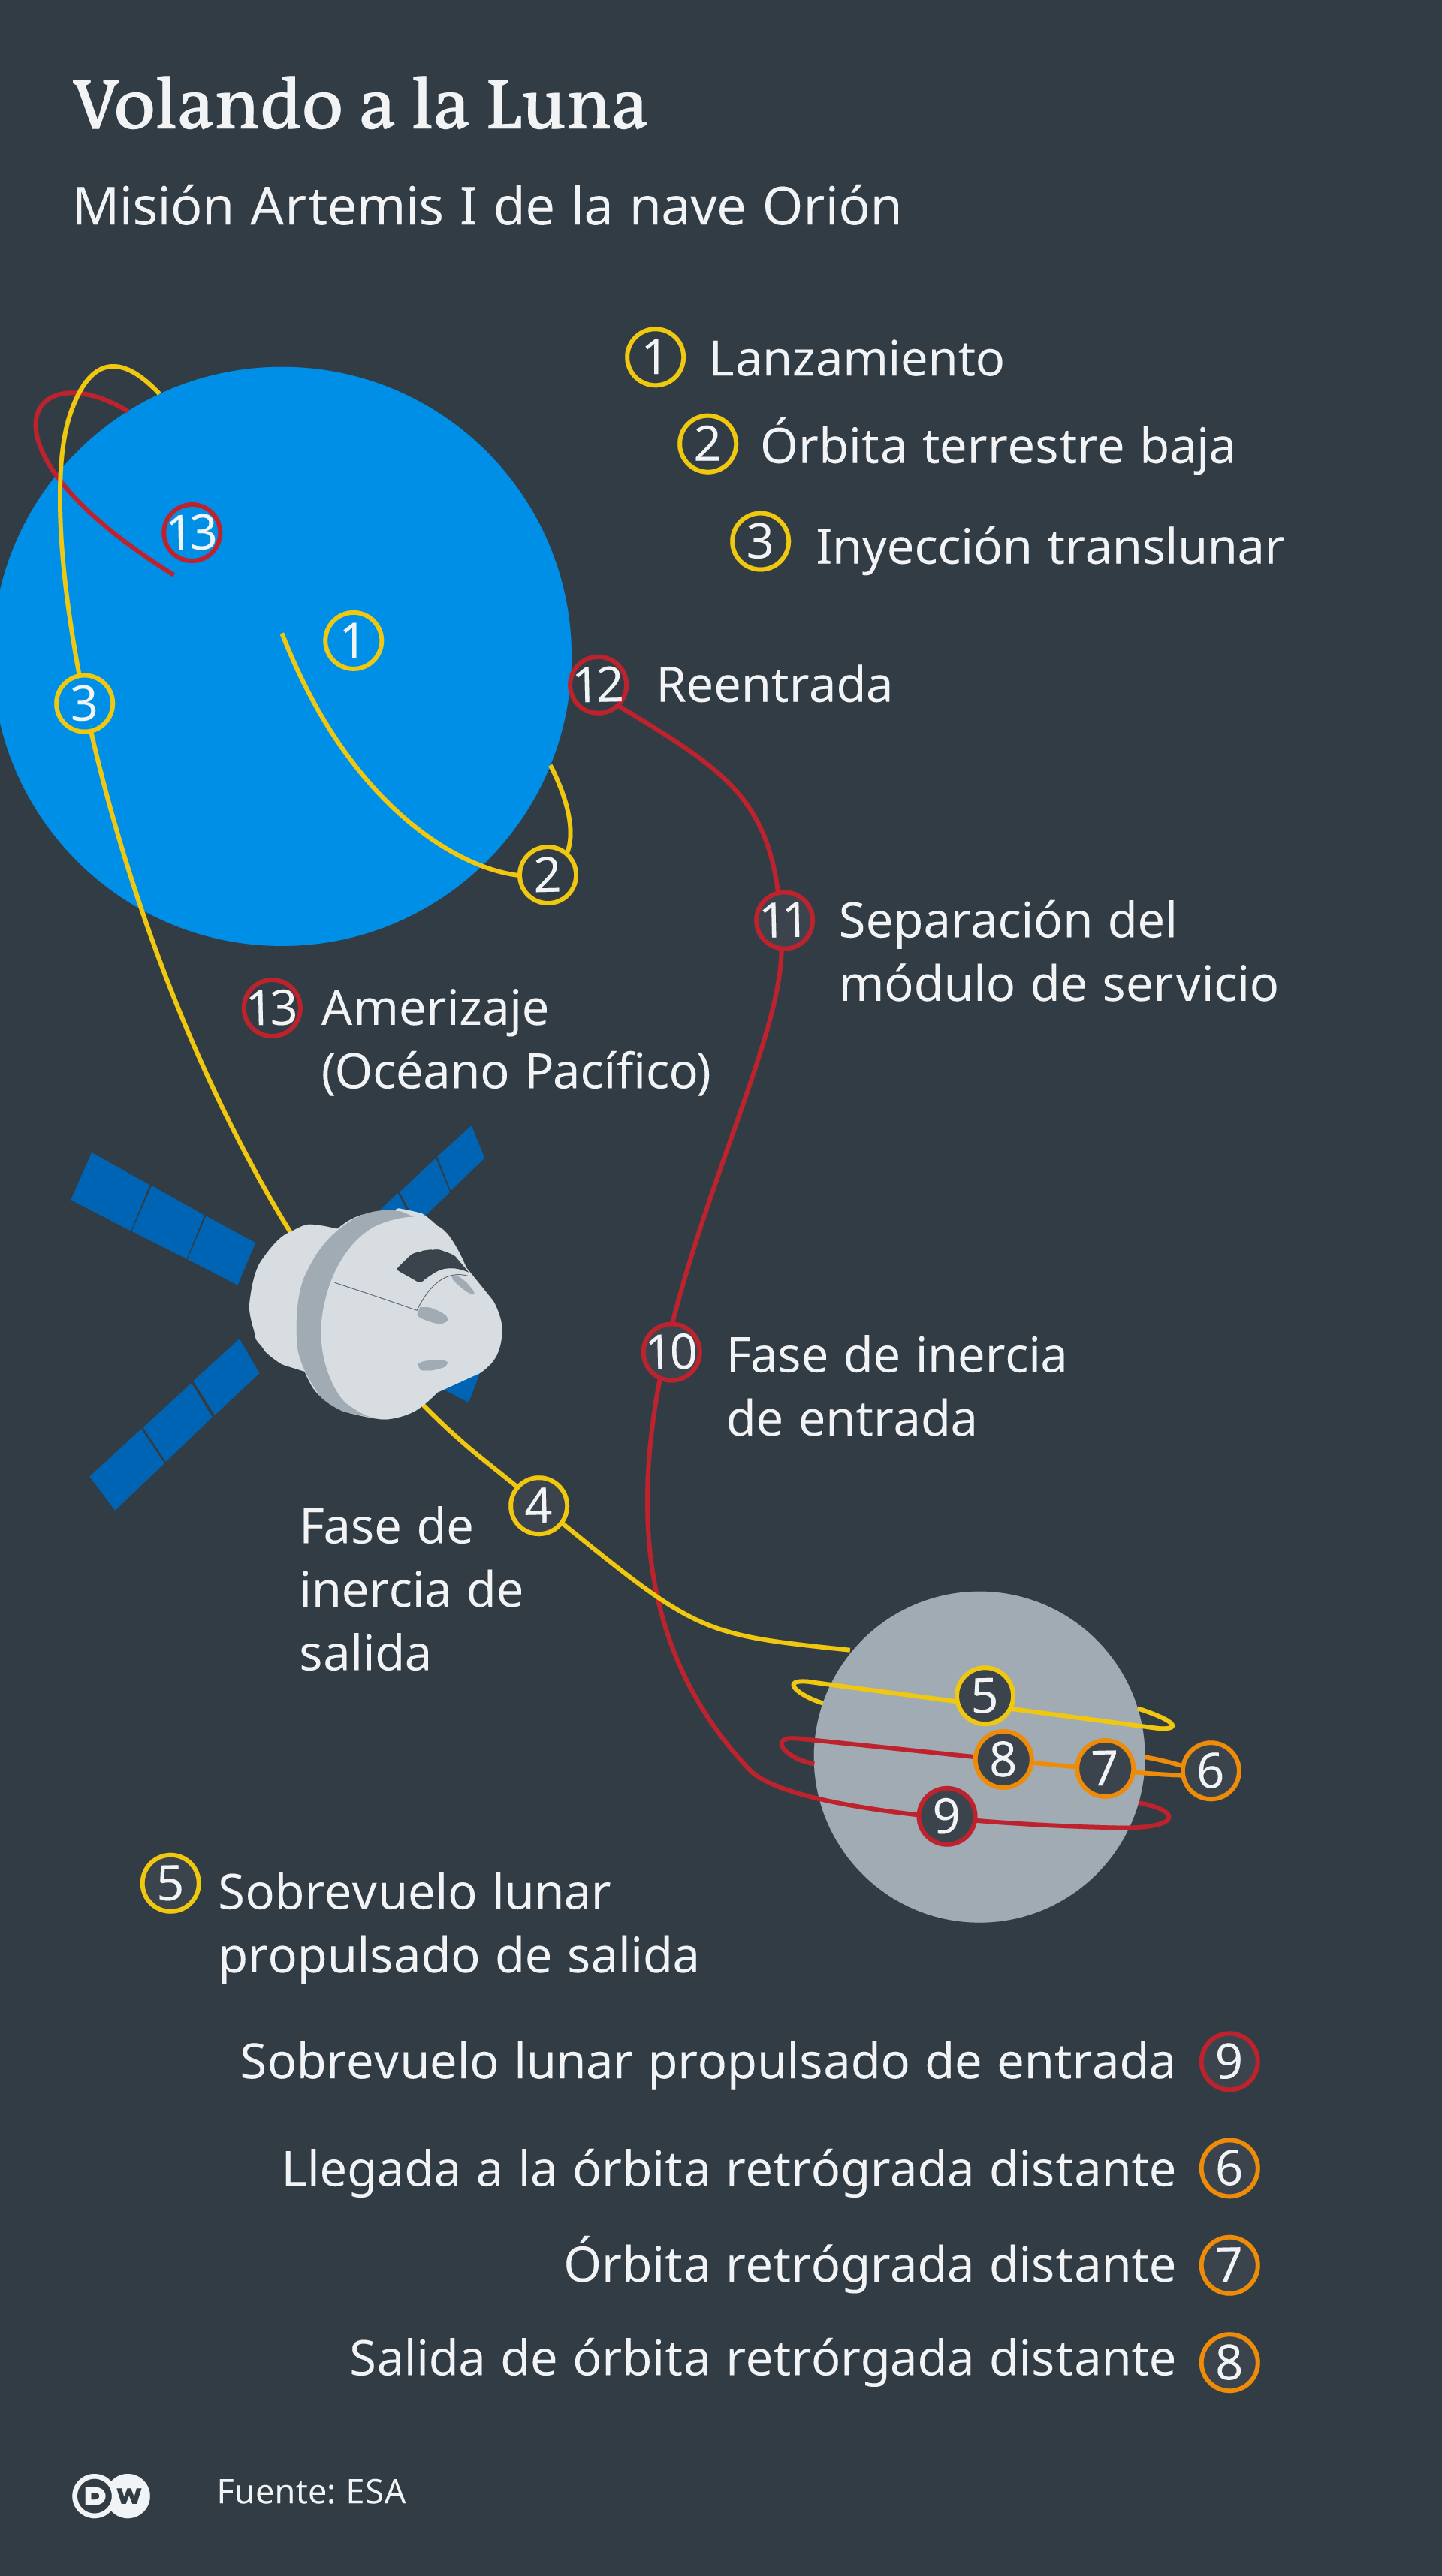 El vuelo a la Luna de la nave Orión, en la misión Artemis I.